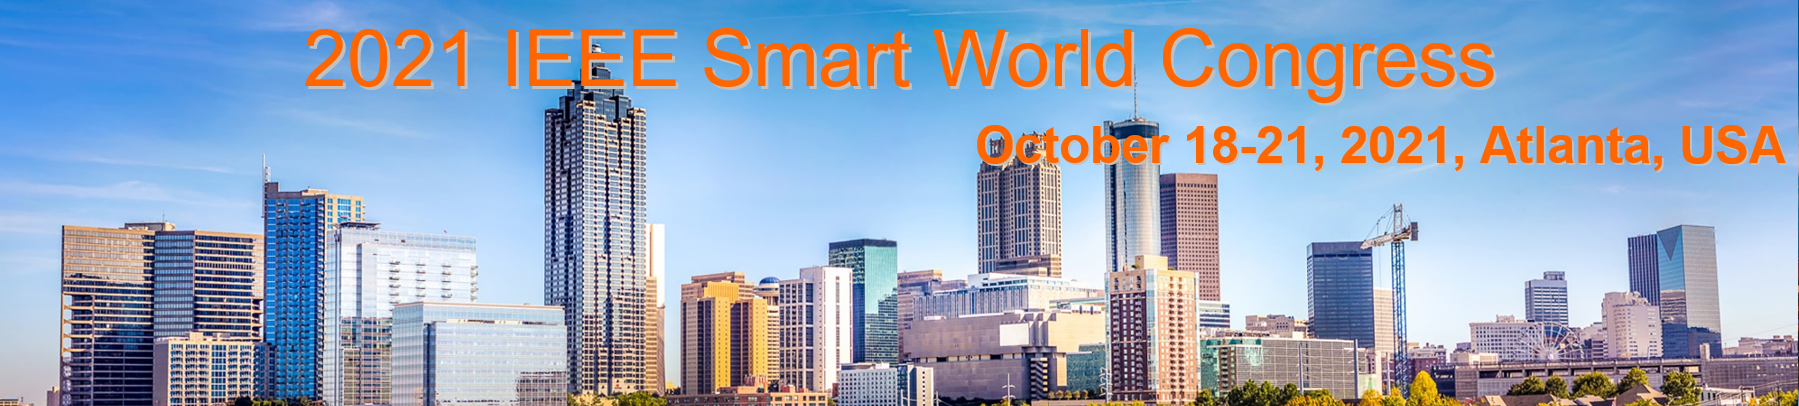 2021 IEEE Smart World Congress